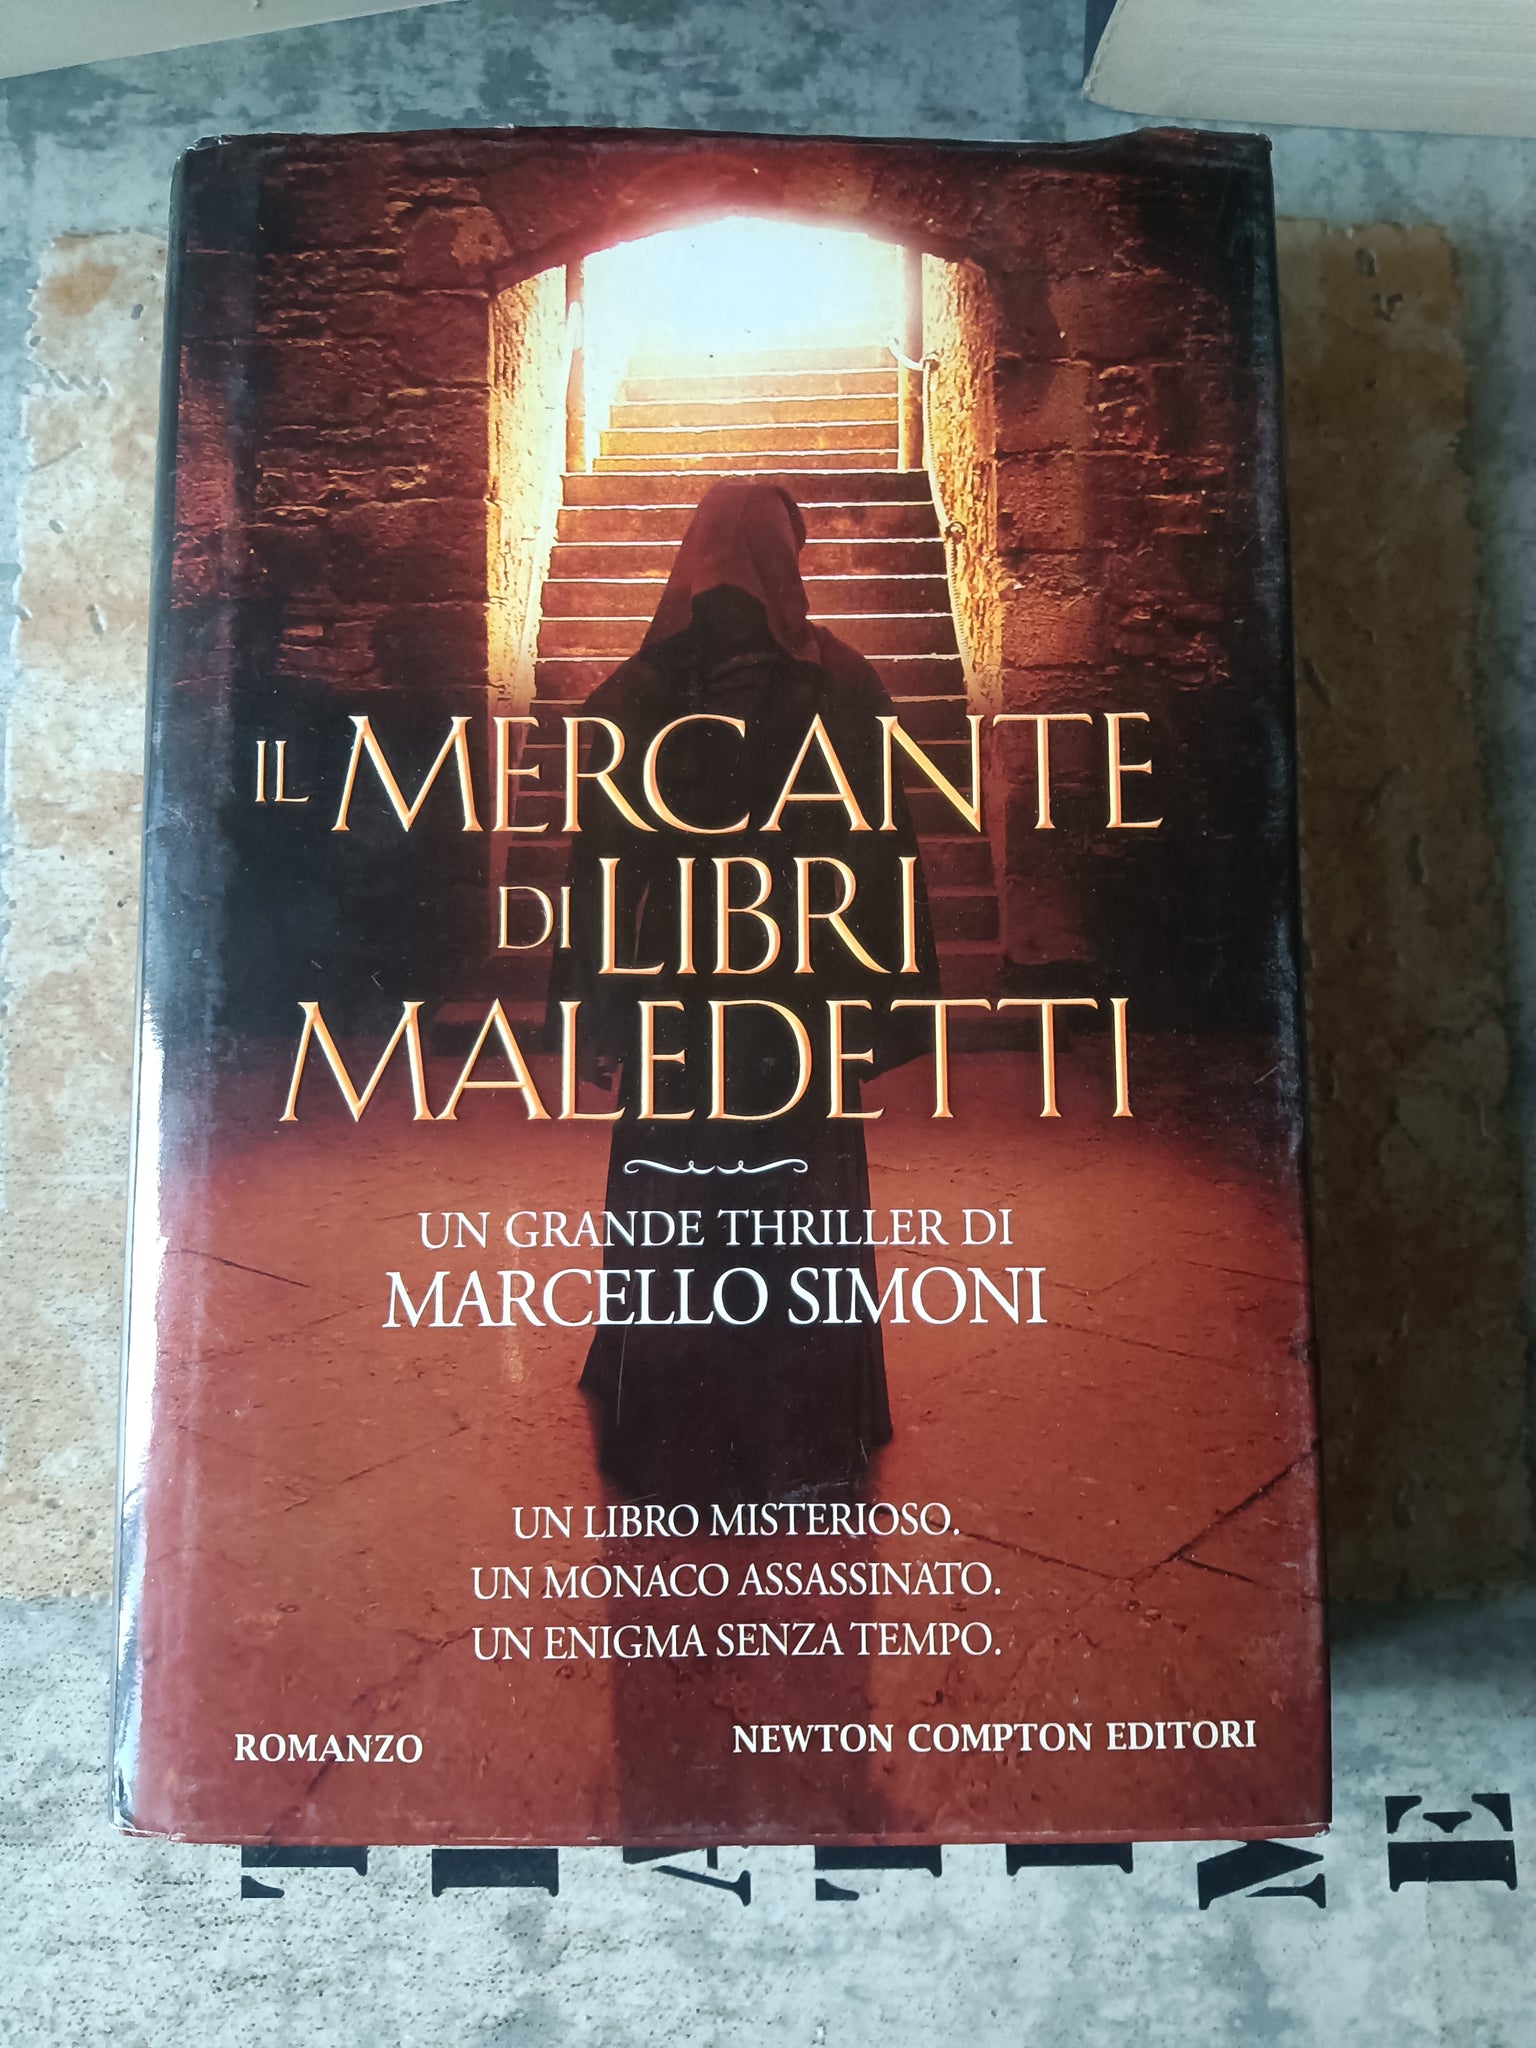 Il mercante di libri maledetti  Marcello simoni – Libreria Obli